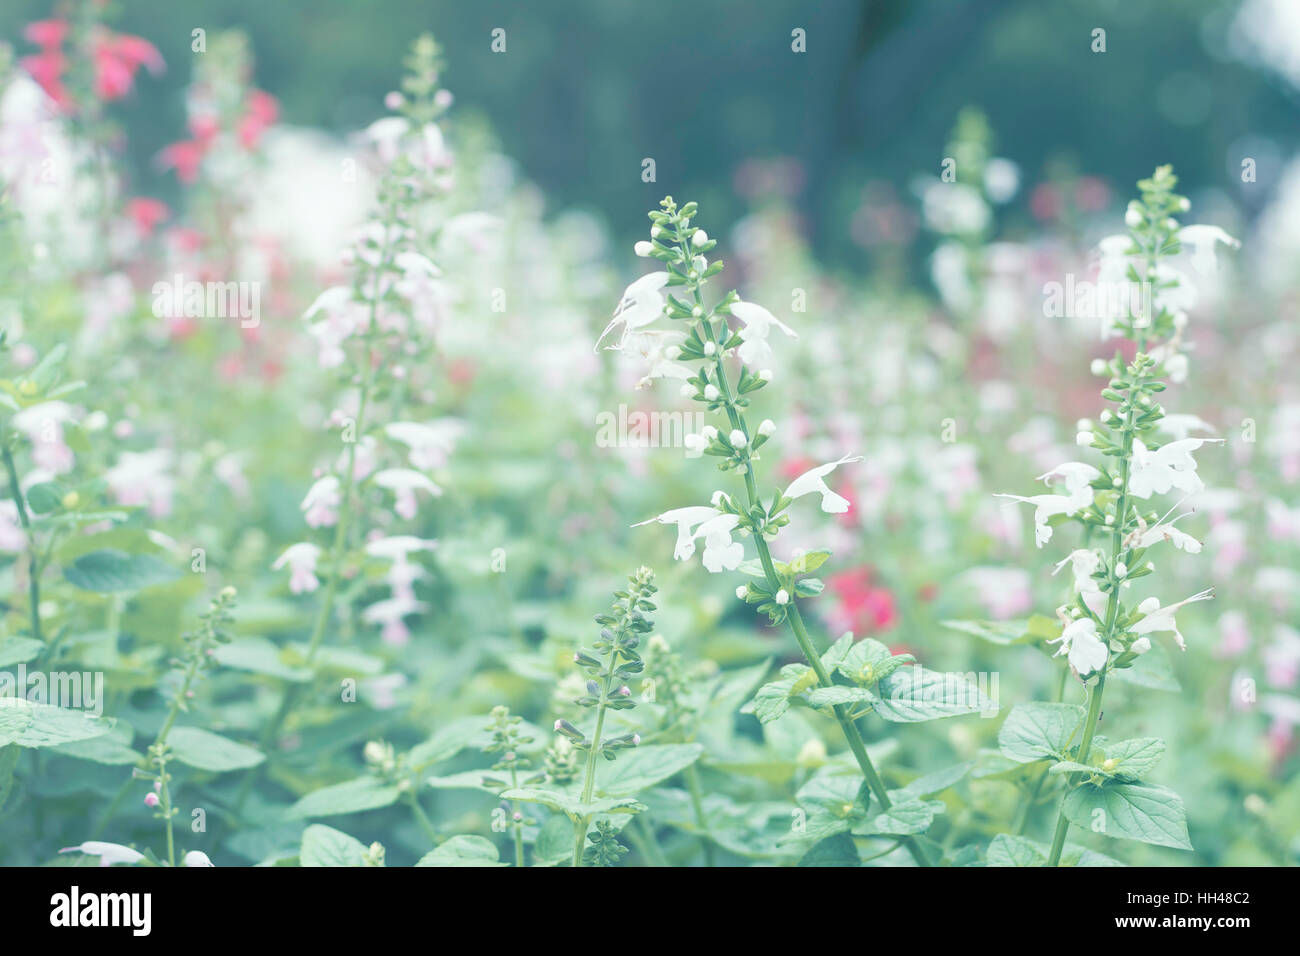 Selektiven Fokus Blumen Hintergrund. Herrliche Aussicht auf bunte Blüte in den Garten und grünen Rasen-Landschaft am Wintertag Stockfoto